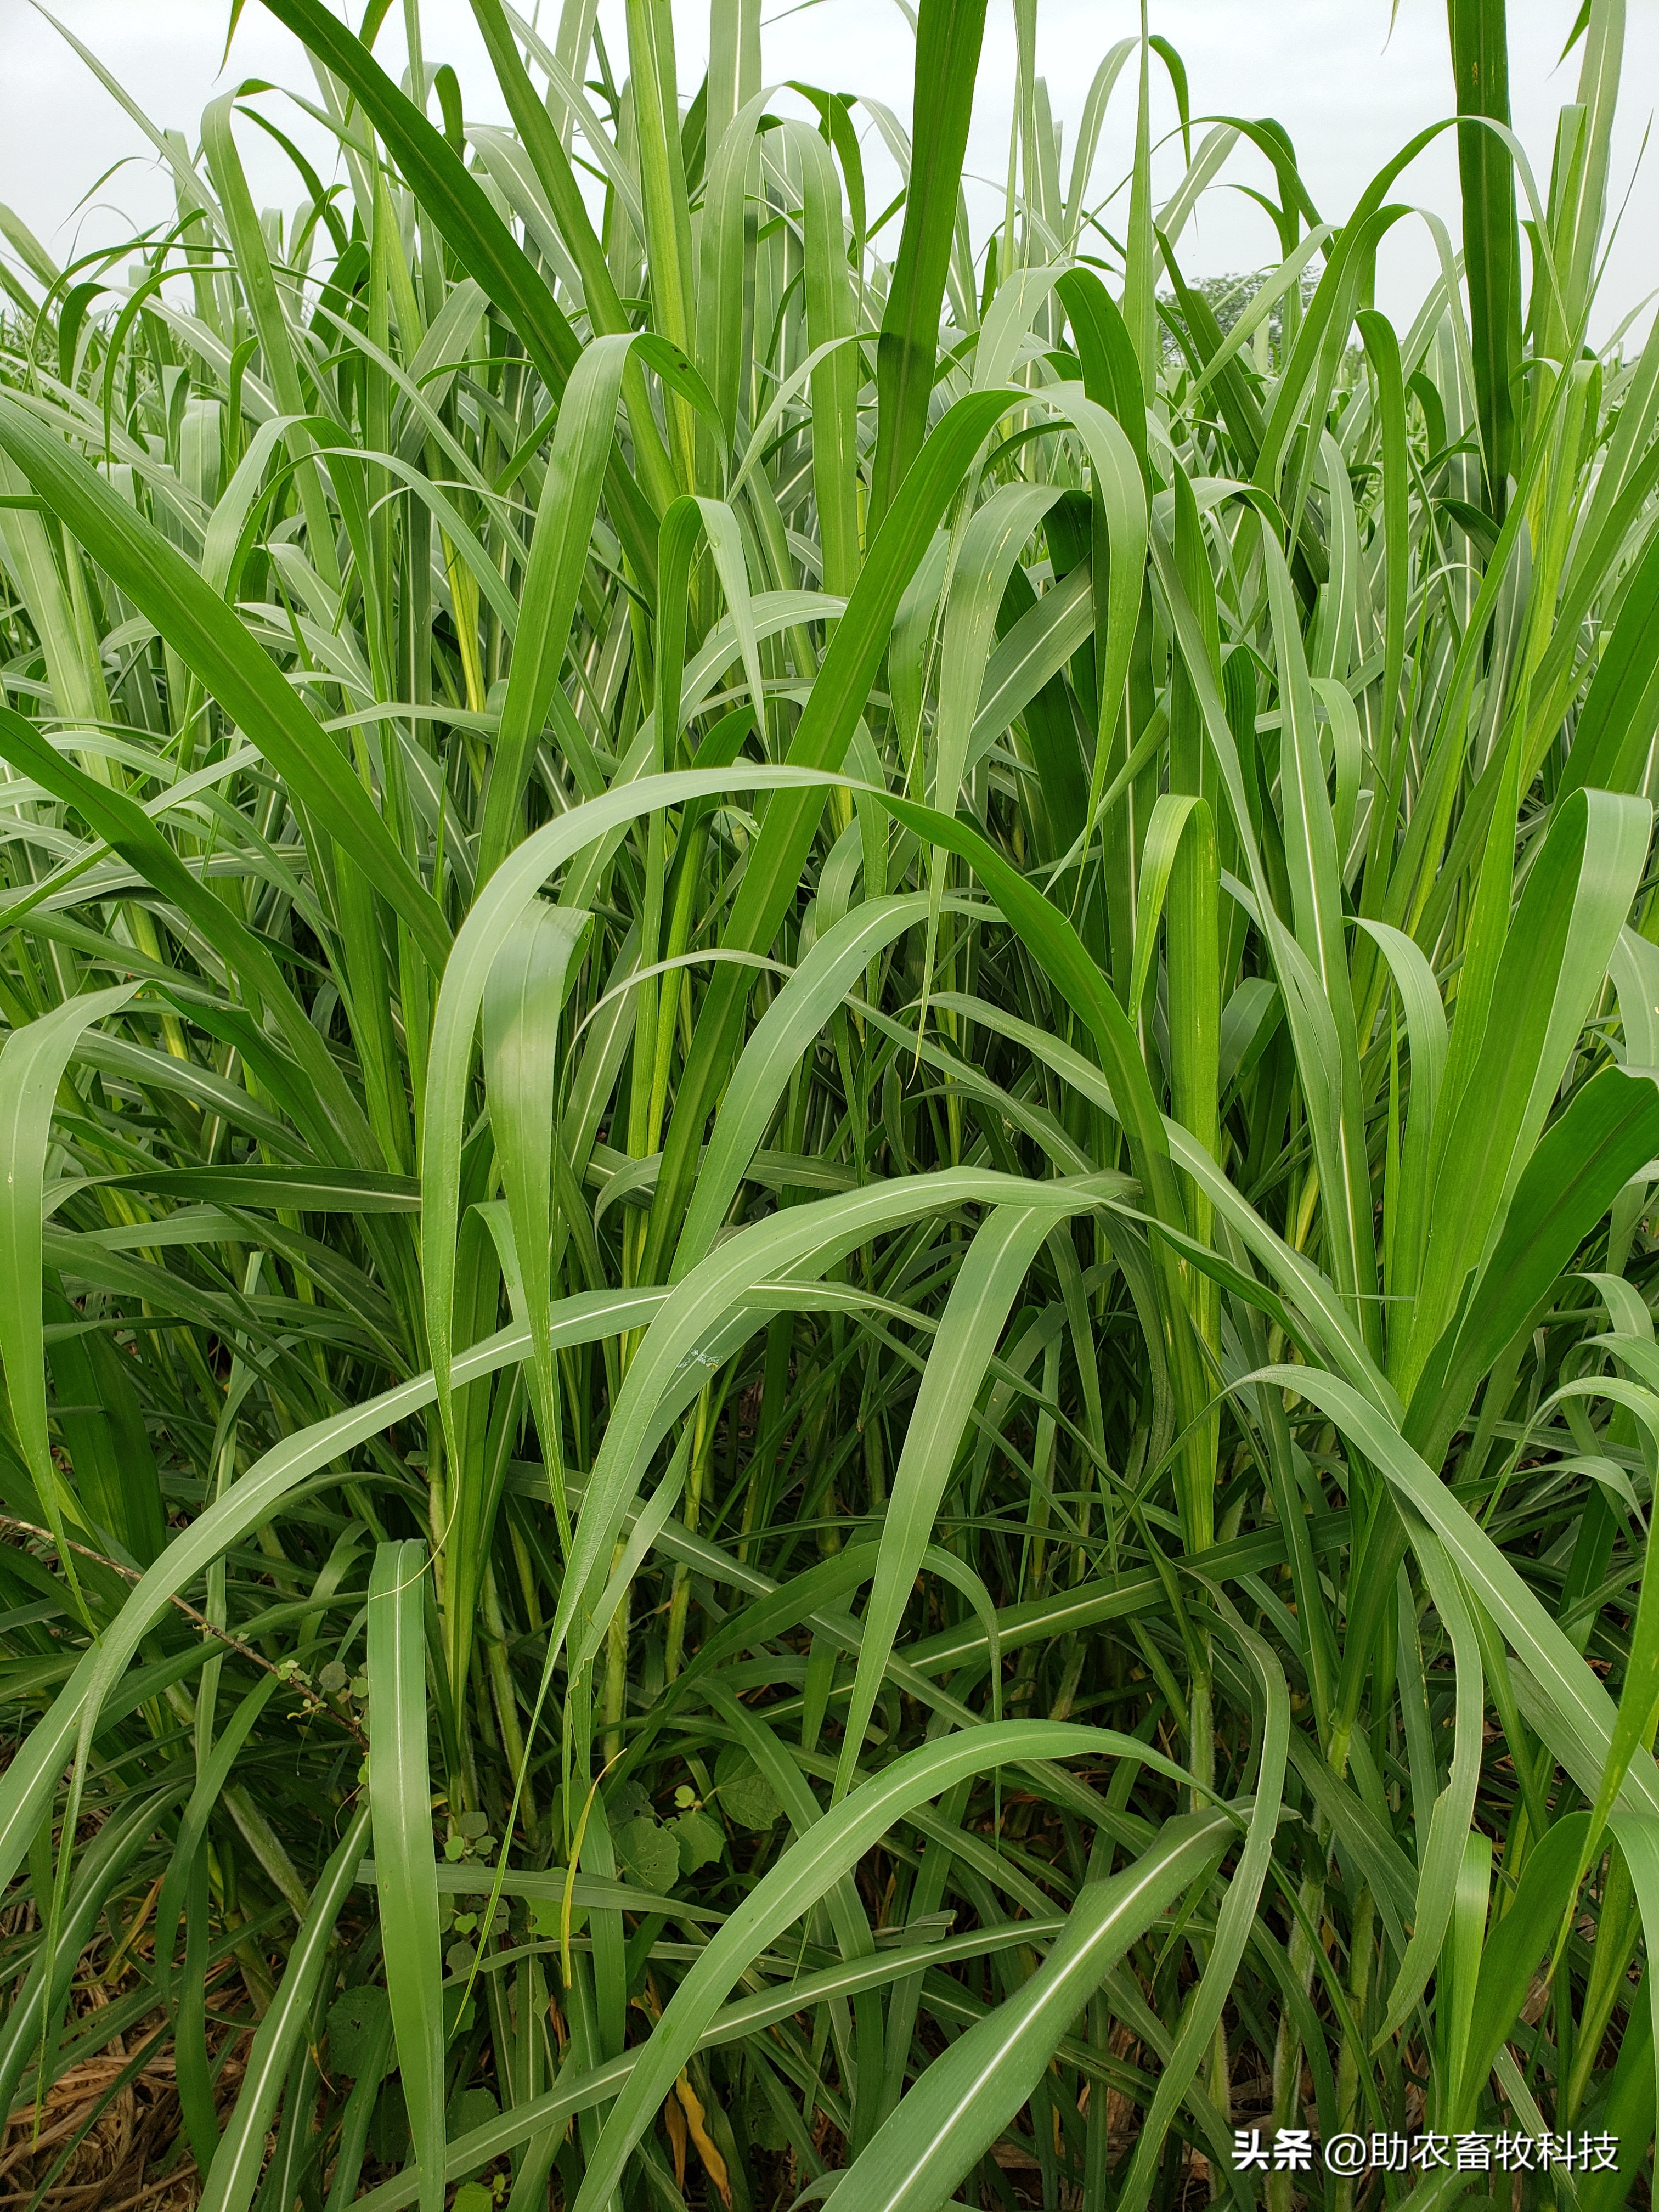 多年生牧草皇竹草和甜象草是当前产量更高的品种